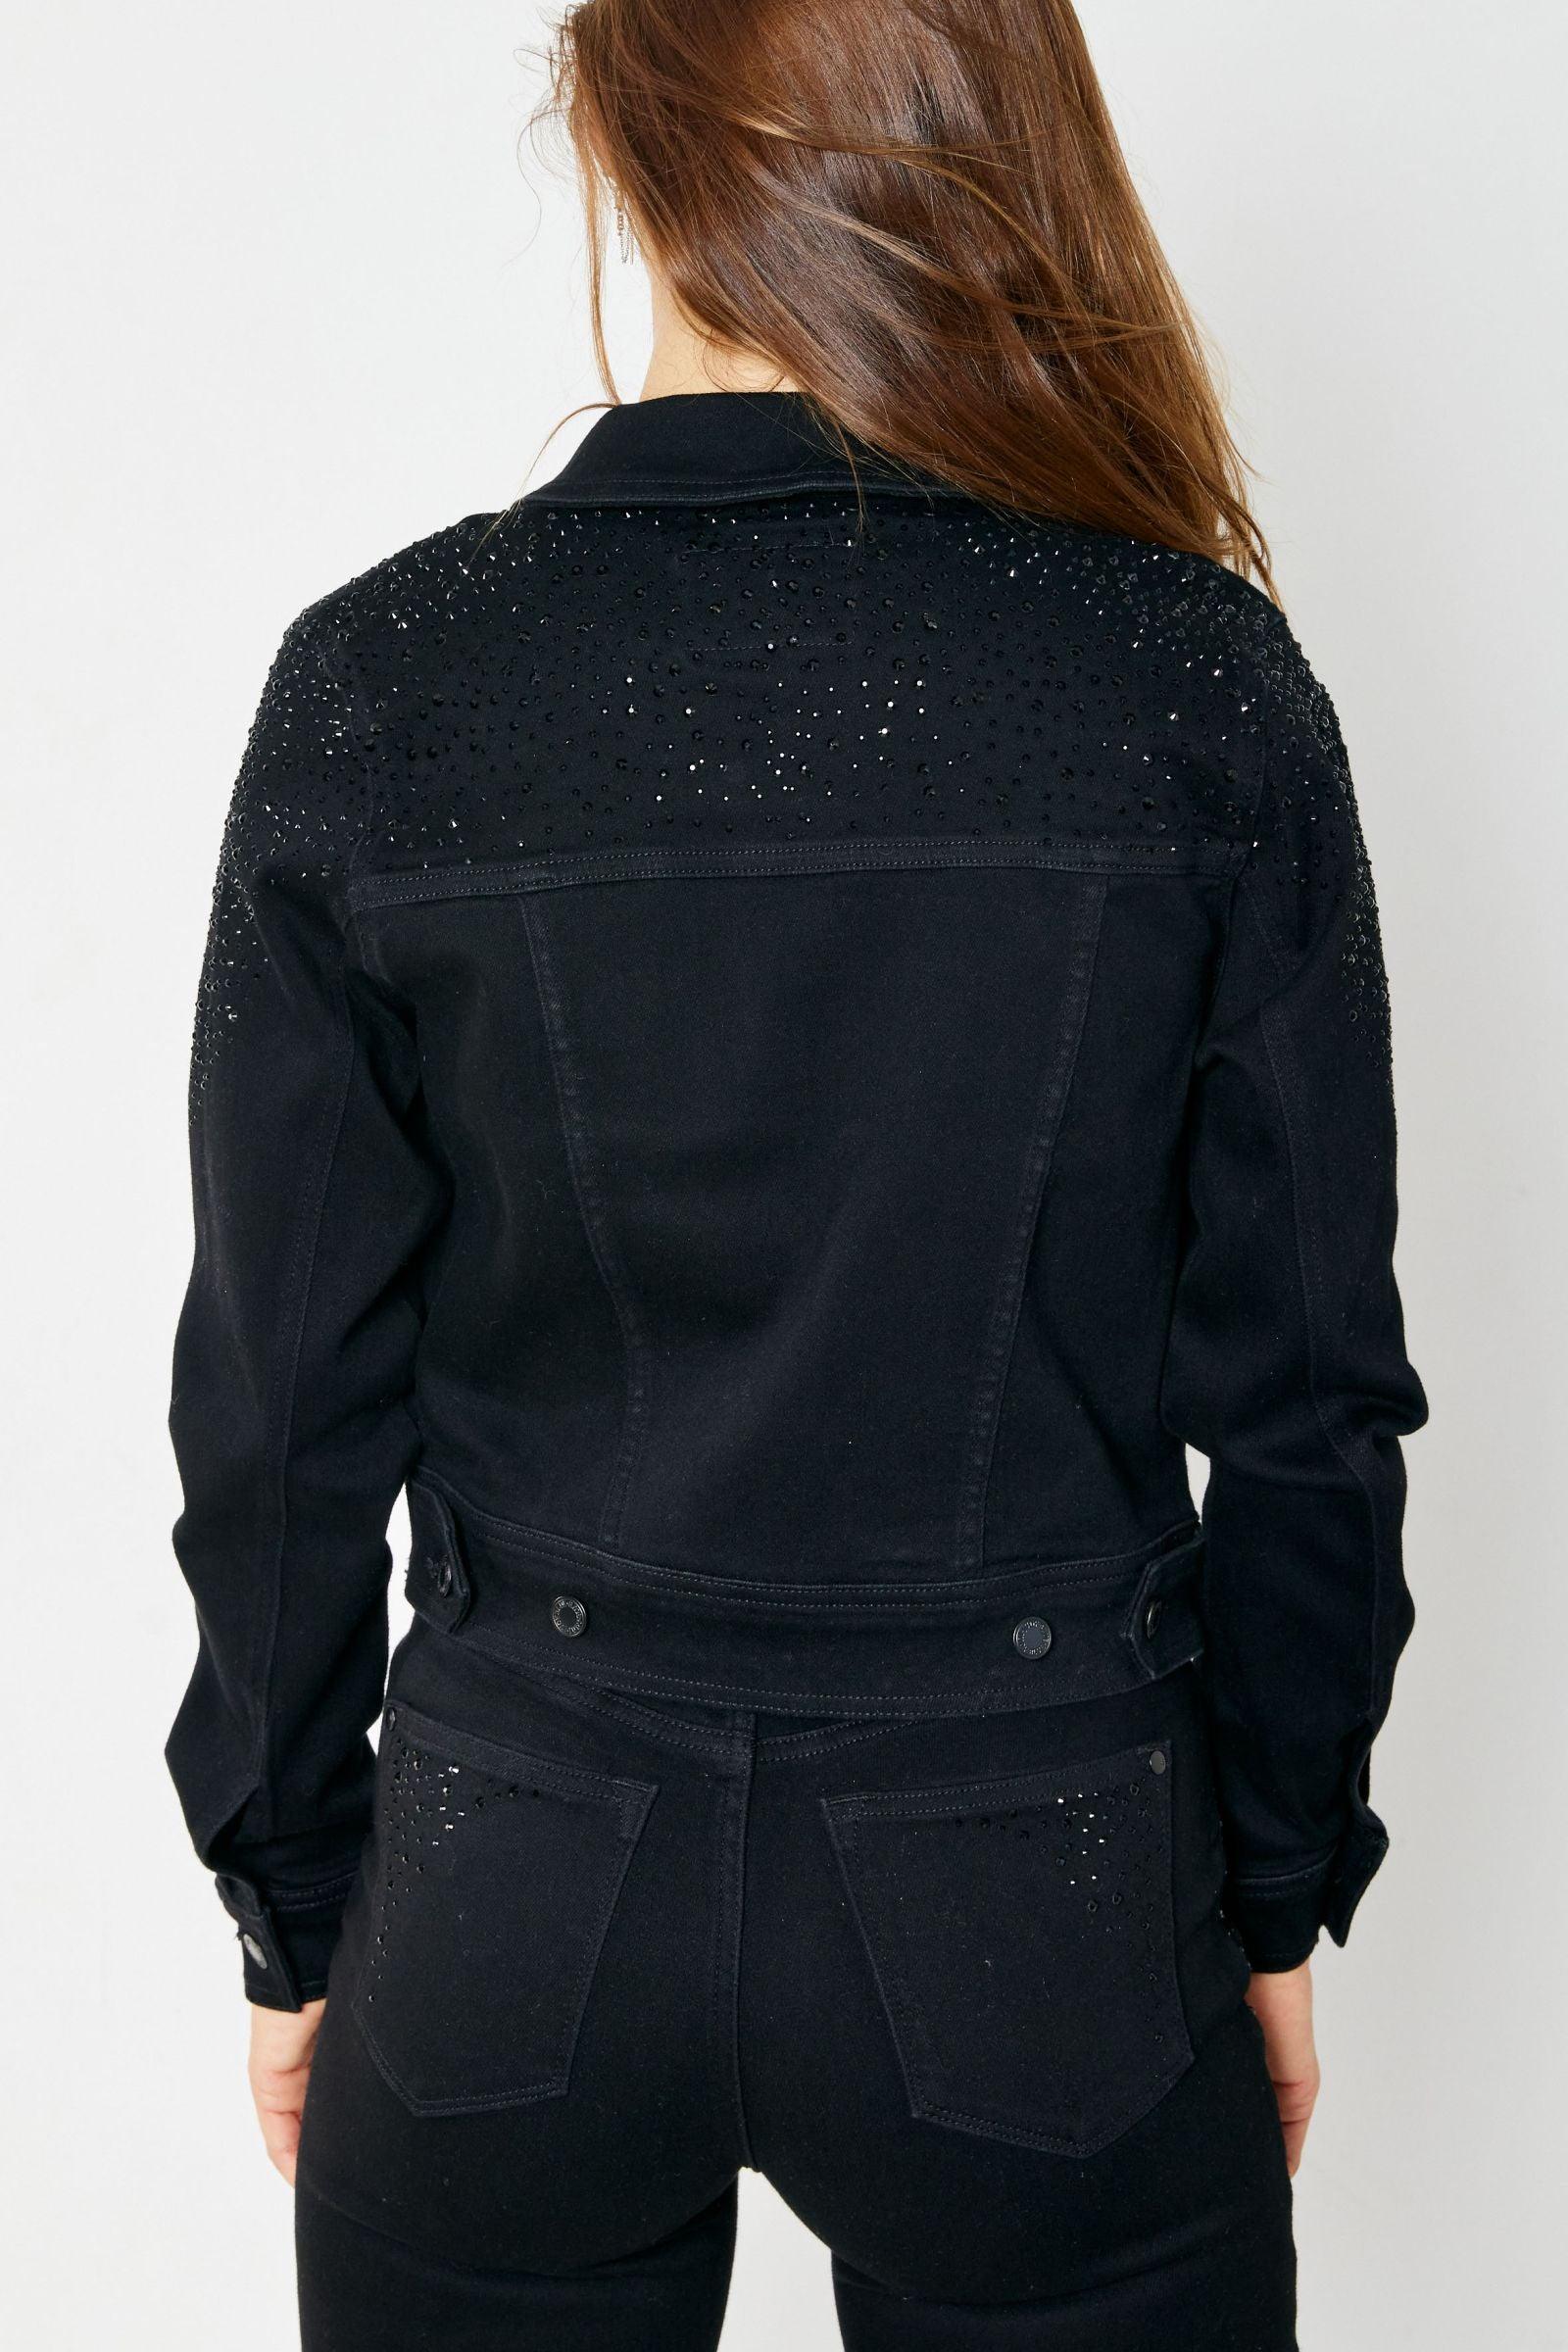 Judy Blue Rhinestone Denim Jacket - BeLoved Boutique 